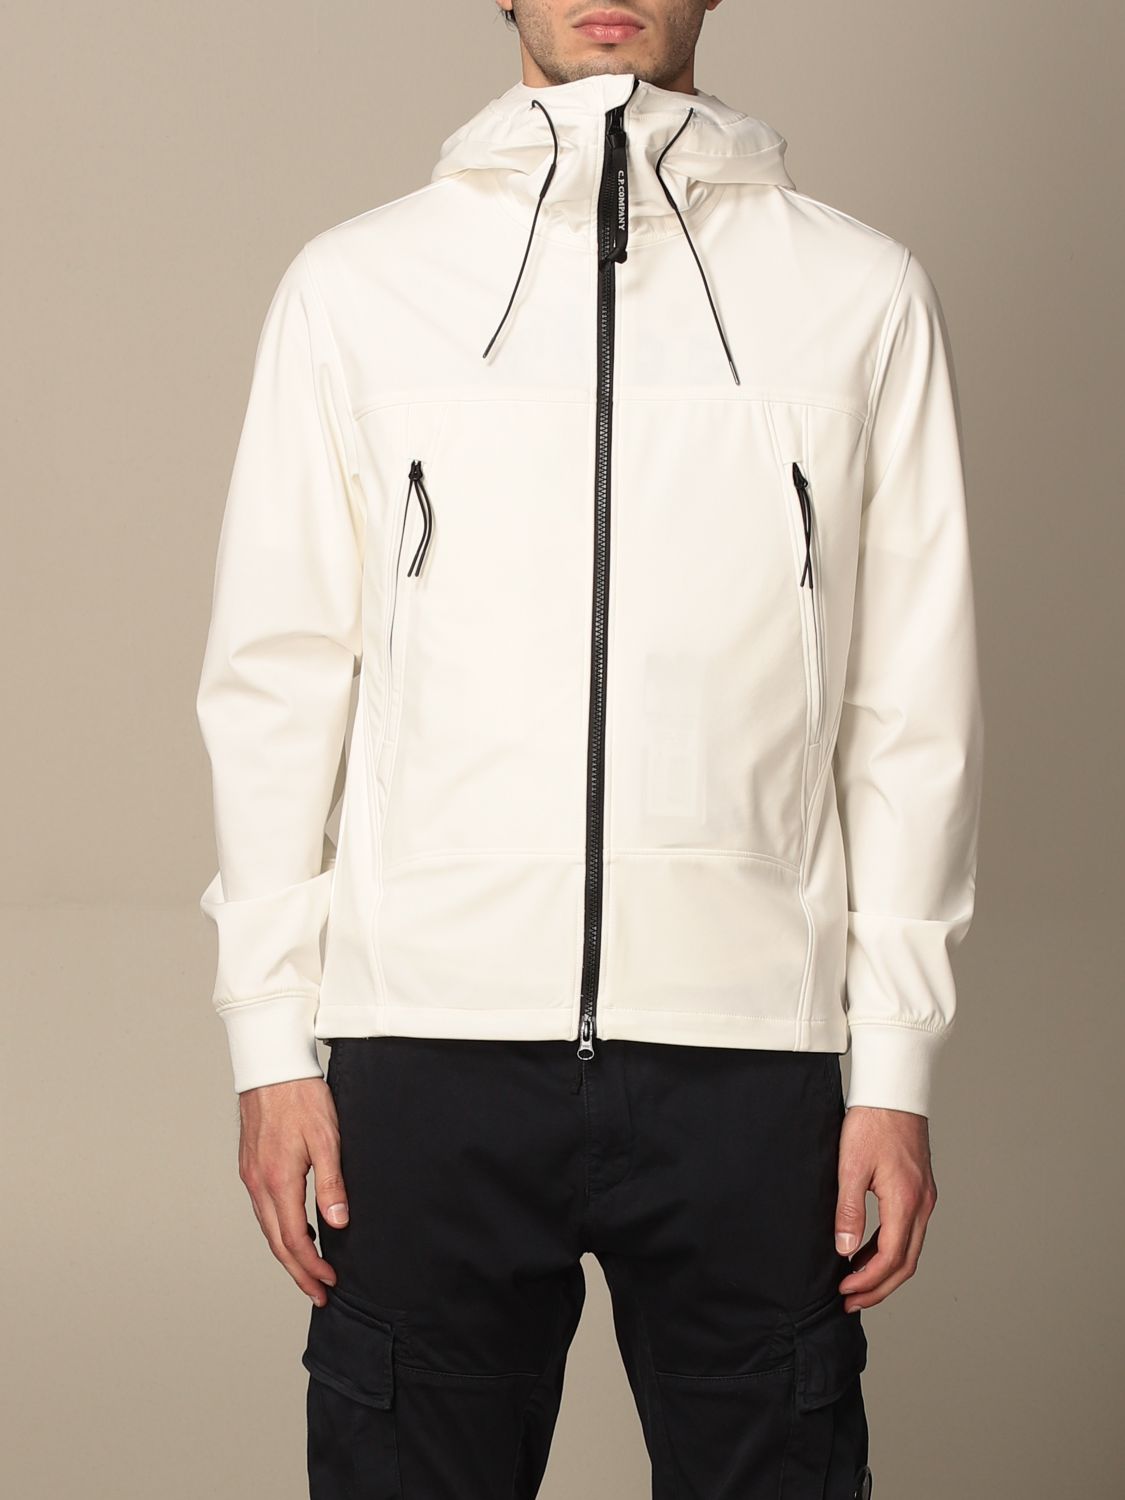 C.P. COMPANY: jacket for men - White | C.p. Company jacket ...